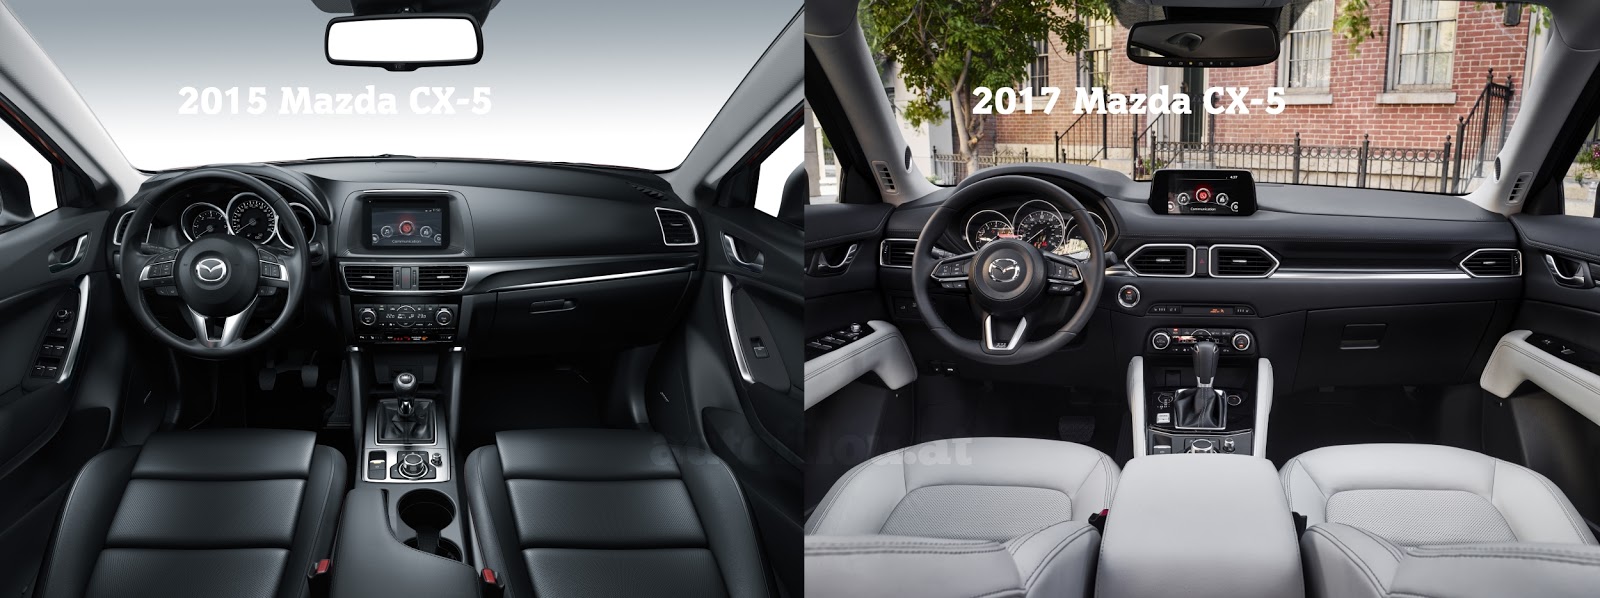 Vergleich 2015 Vs 2017 Mazda Cx 5 Autofilou